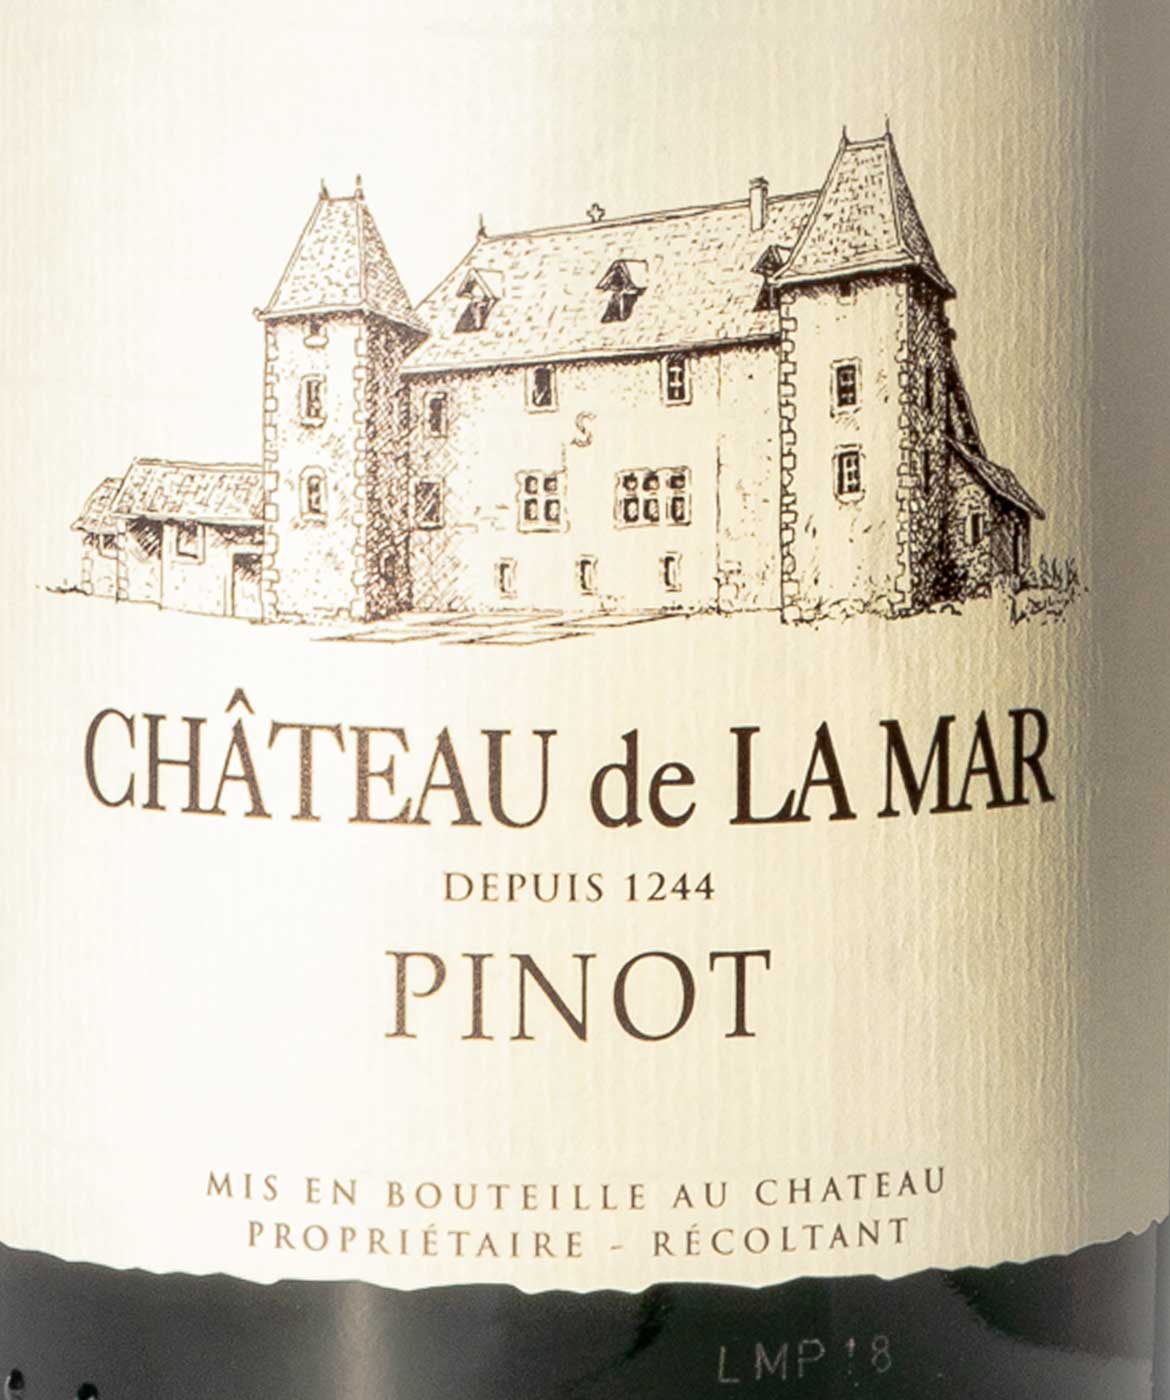 Piniot Savoie - Etiquette vins rouges de savoie